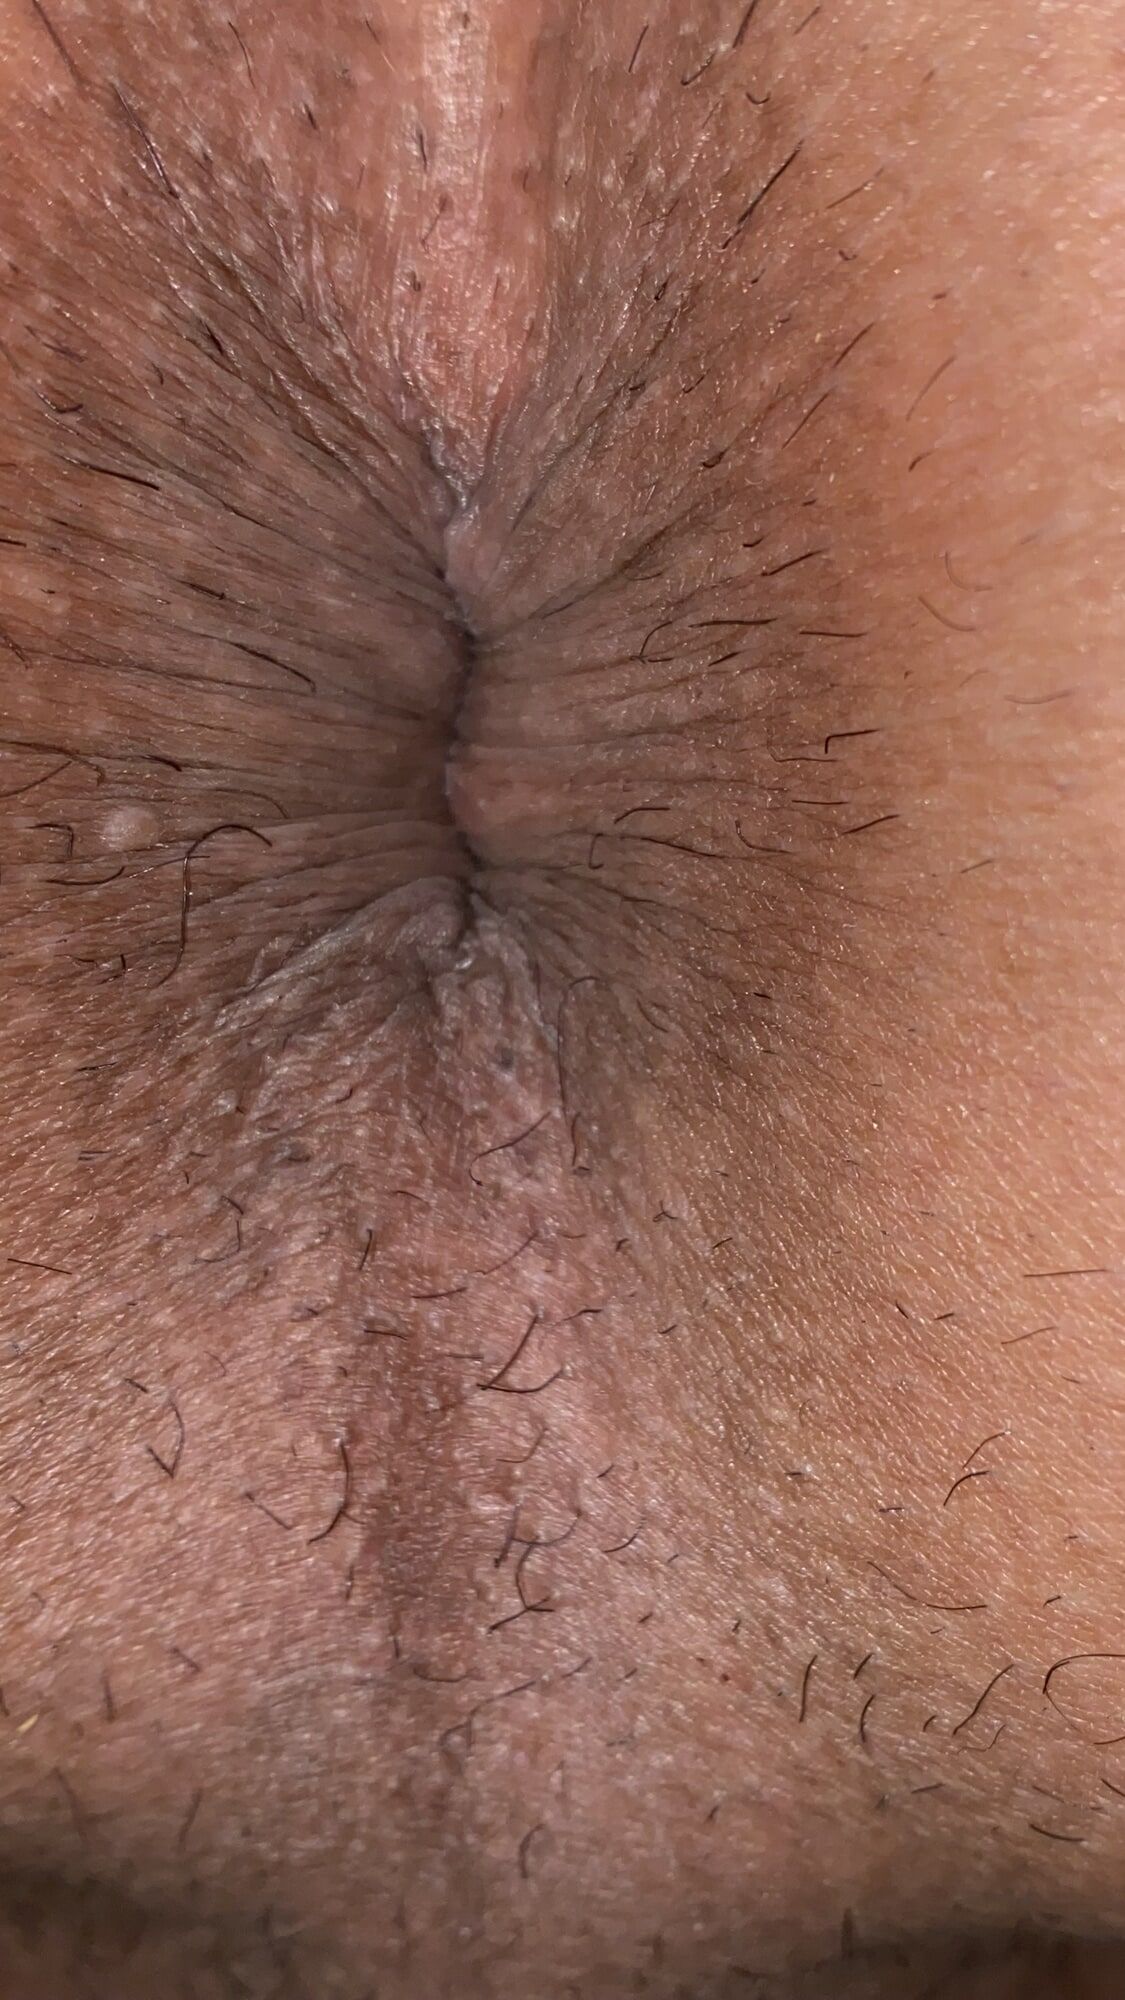 Close-up of a man's anus #40